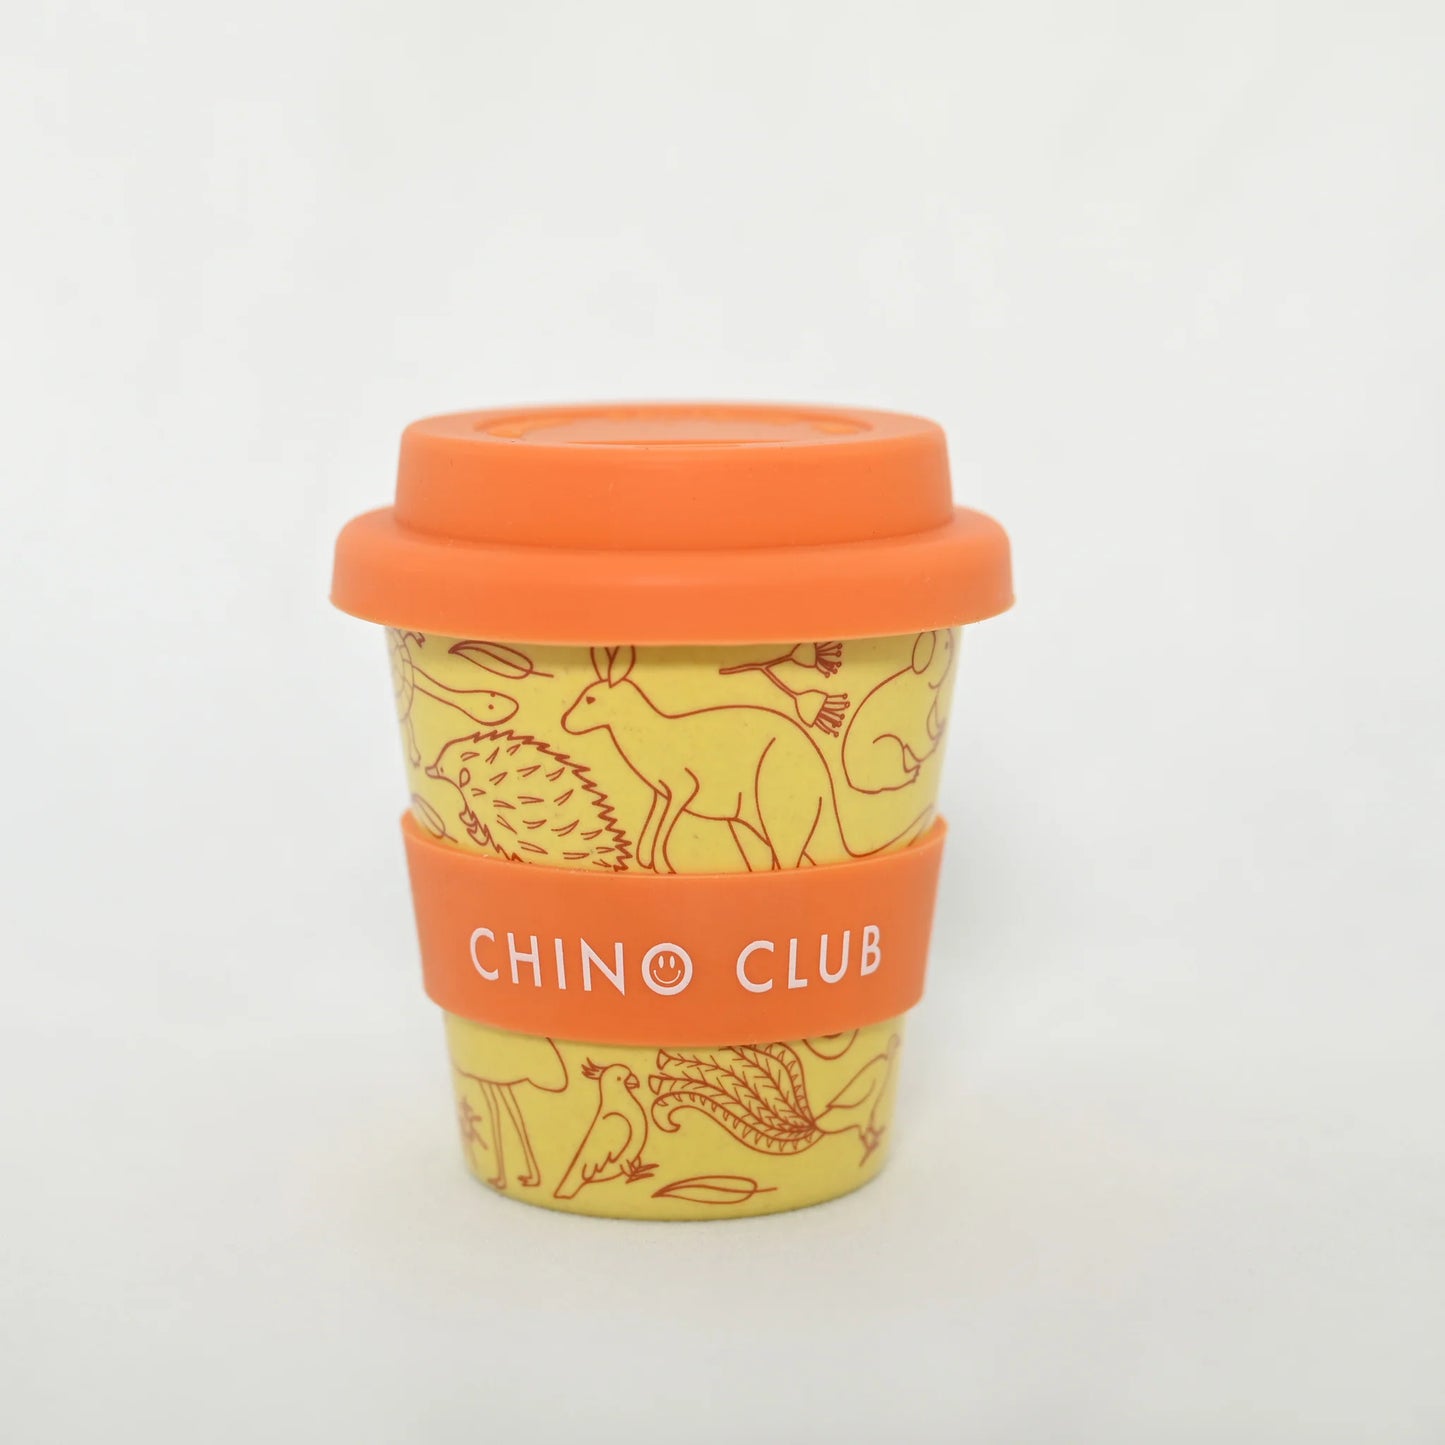 CHINO CLUB - AUSTRALIANA BABY CHINO CUP